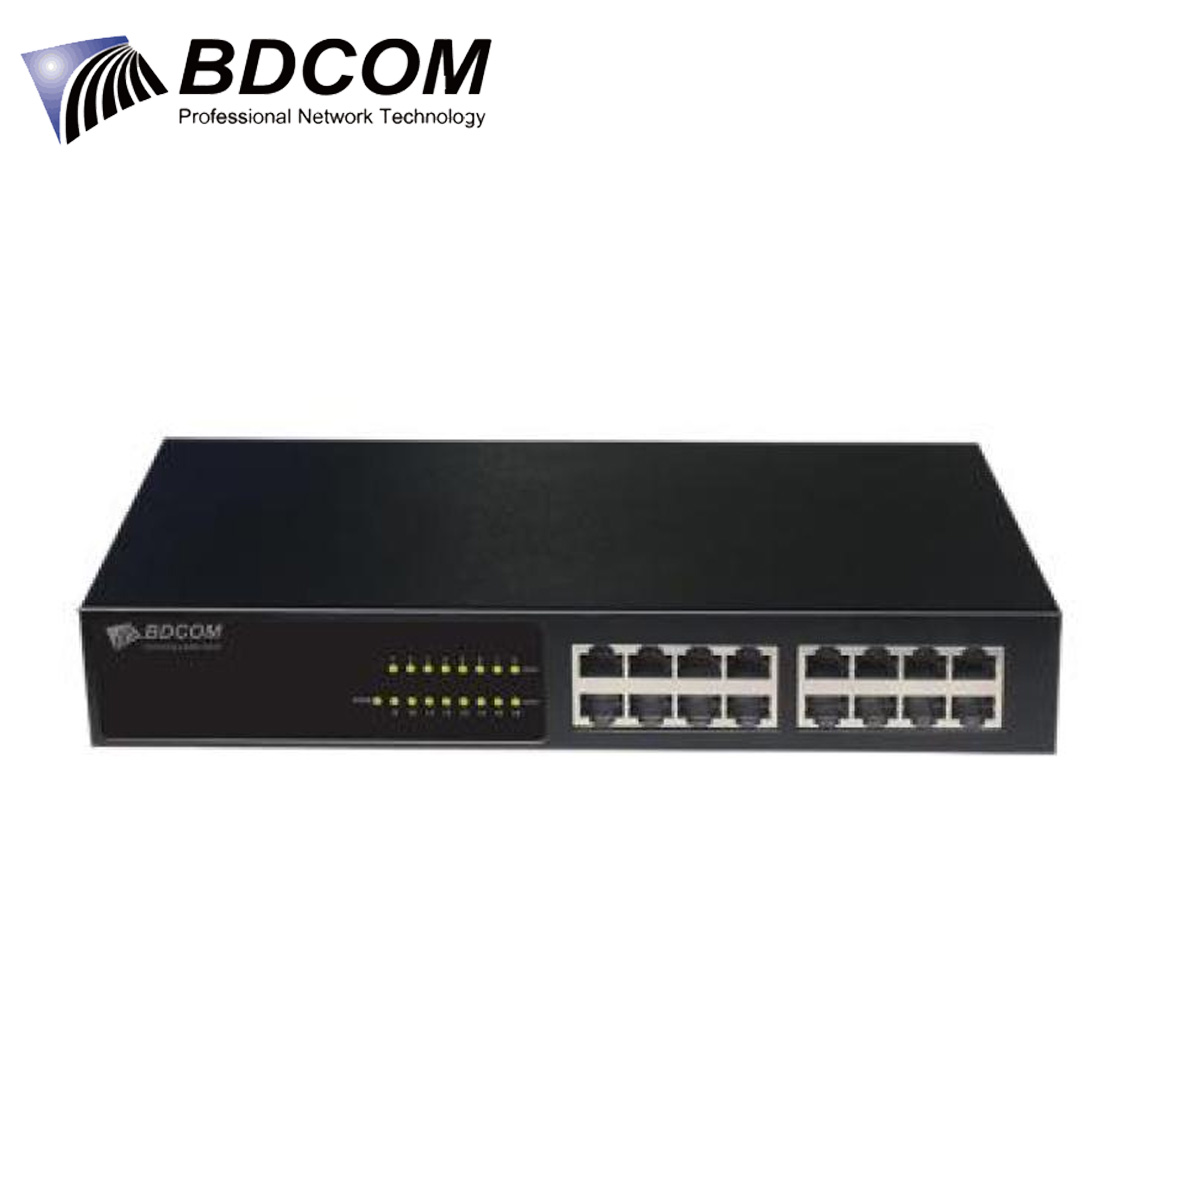 BDCOM Gigabit 16-Port Rack Switch S1516v1